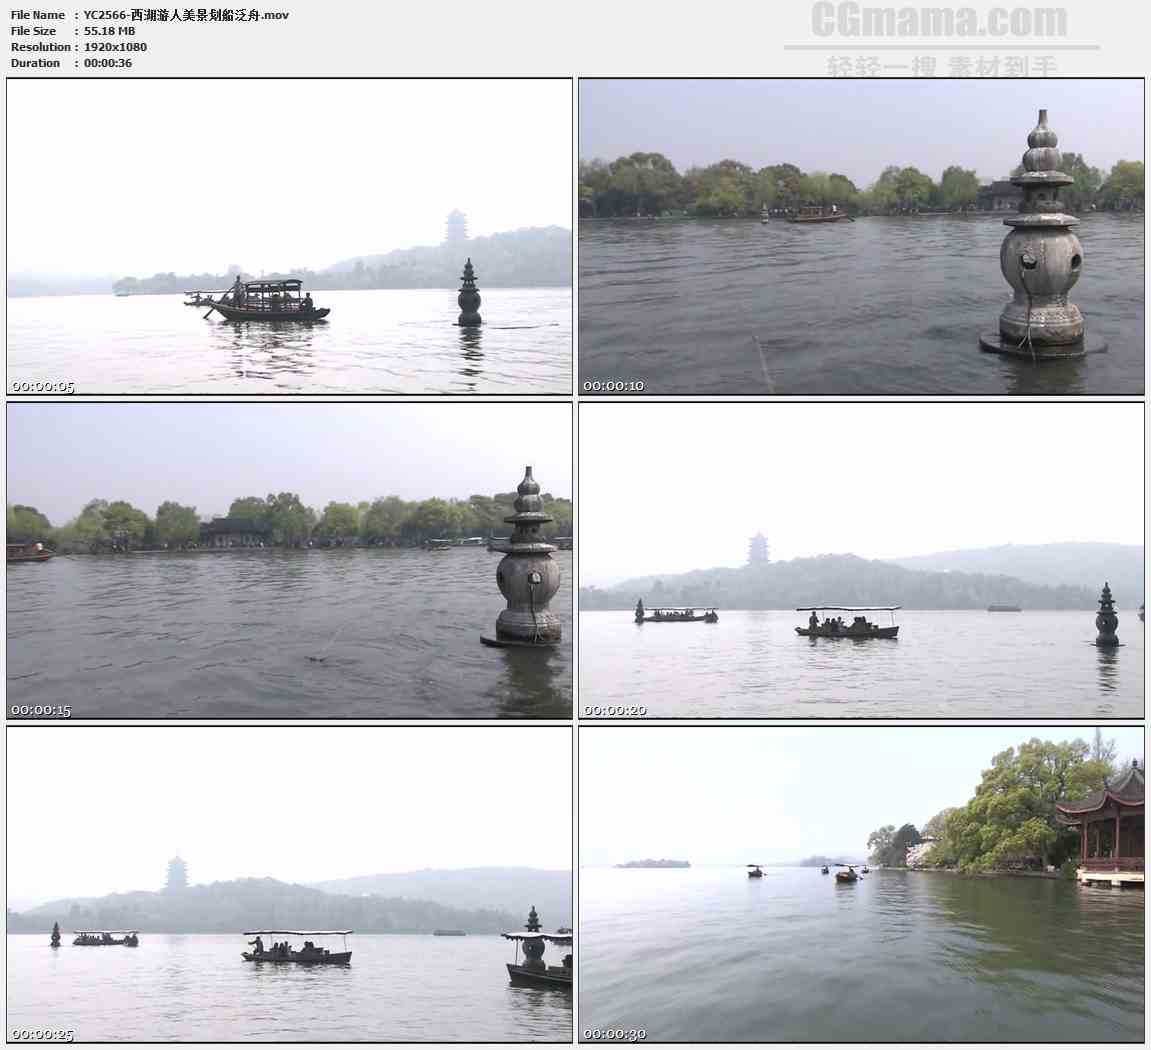 YC2566-西湖游人美景划船泛舟高清实拍视频素材